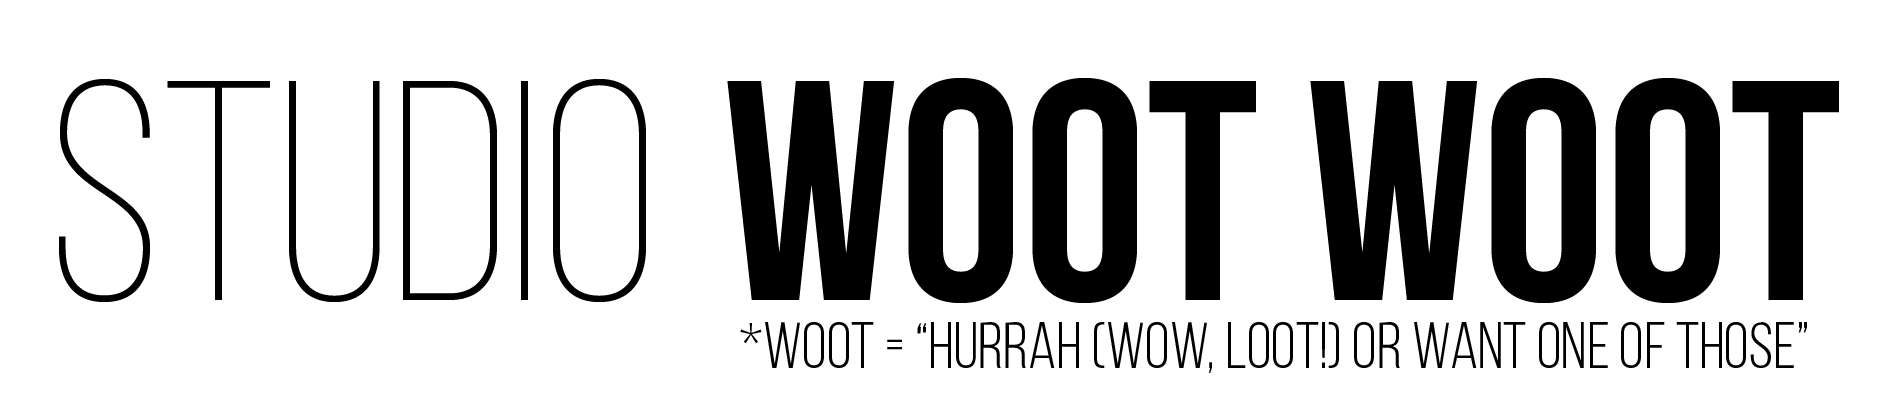 Woot Logo - studio Woot Woot – studio Woot Woot